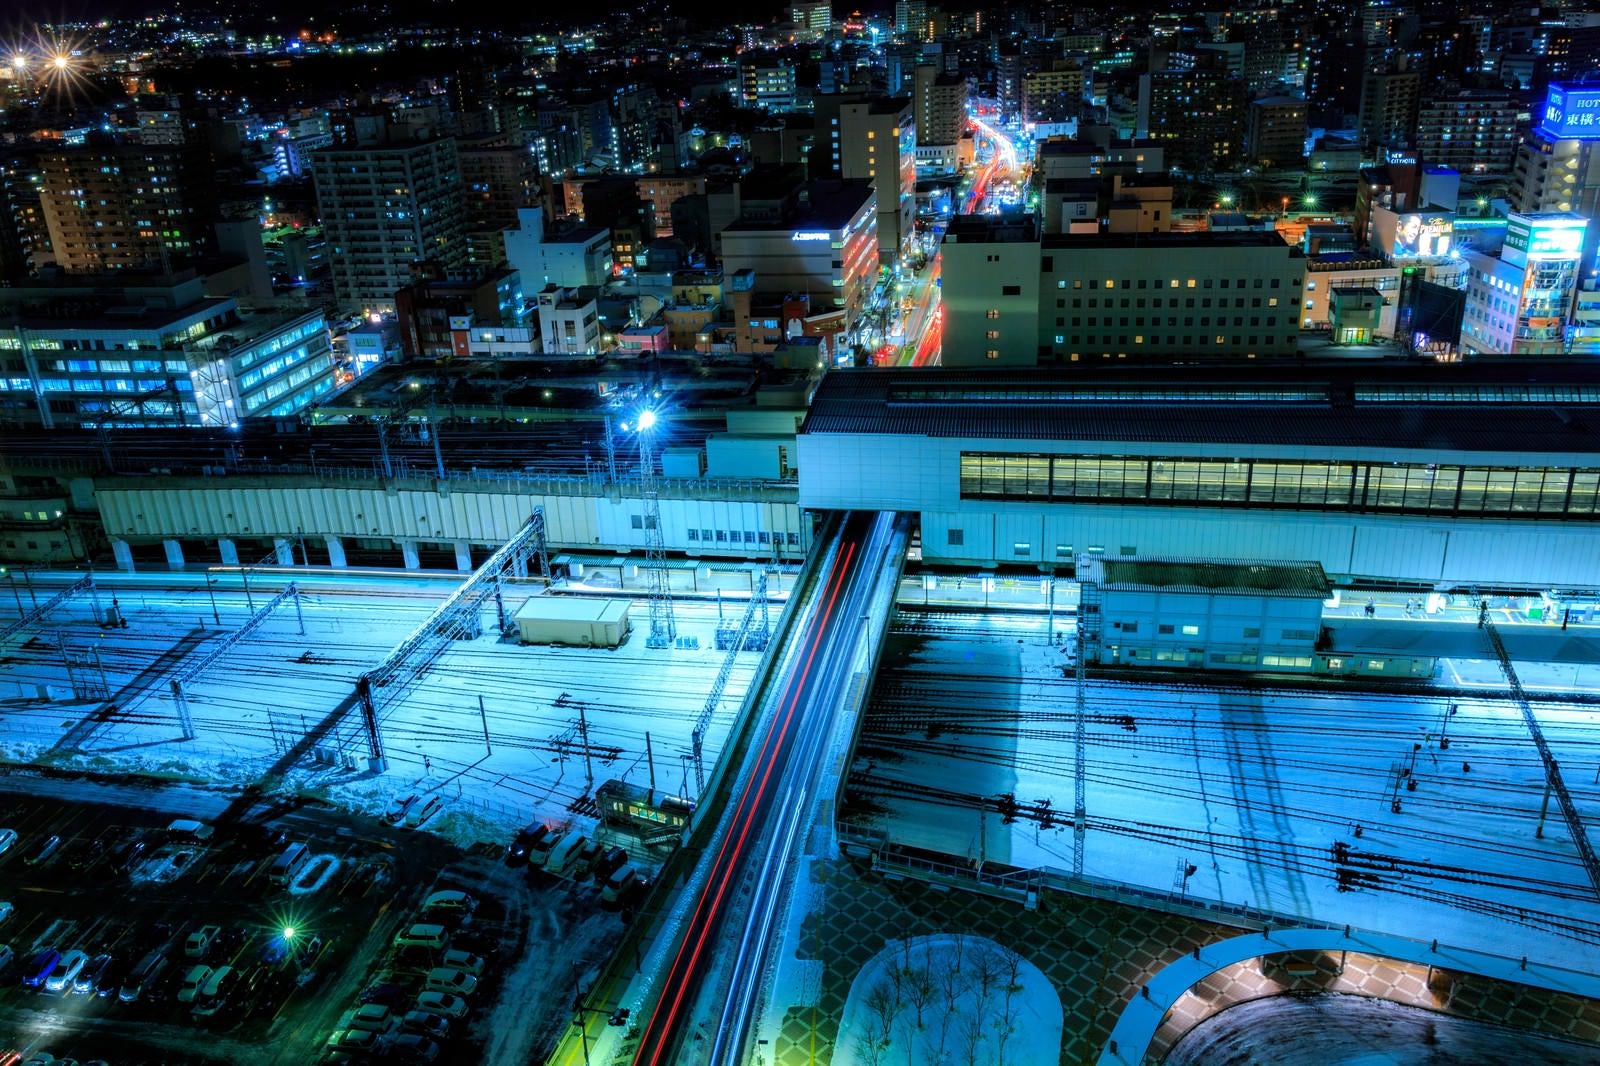 「雪が積もる盛岡駅夜景」の写真